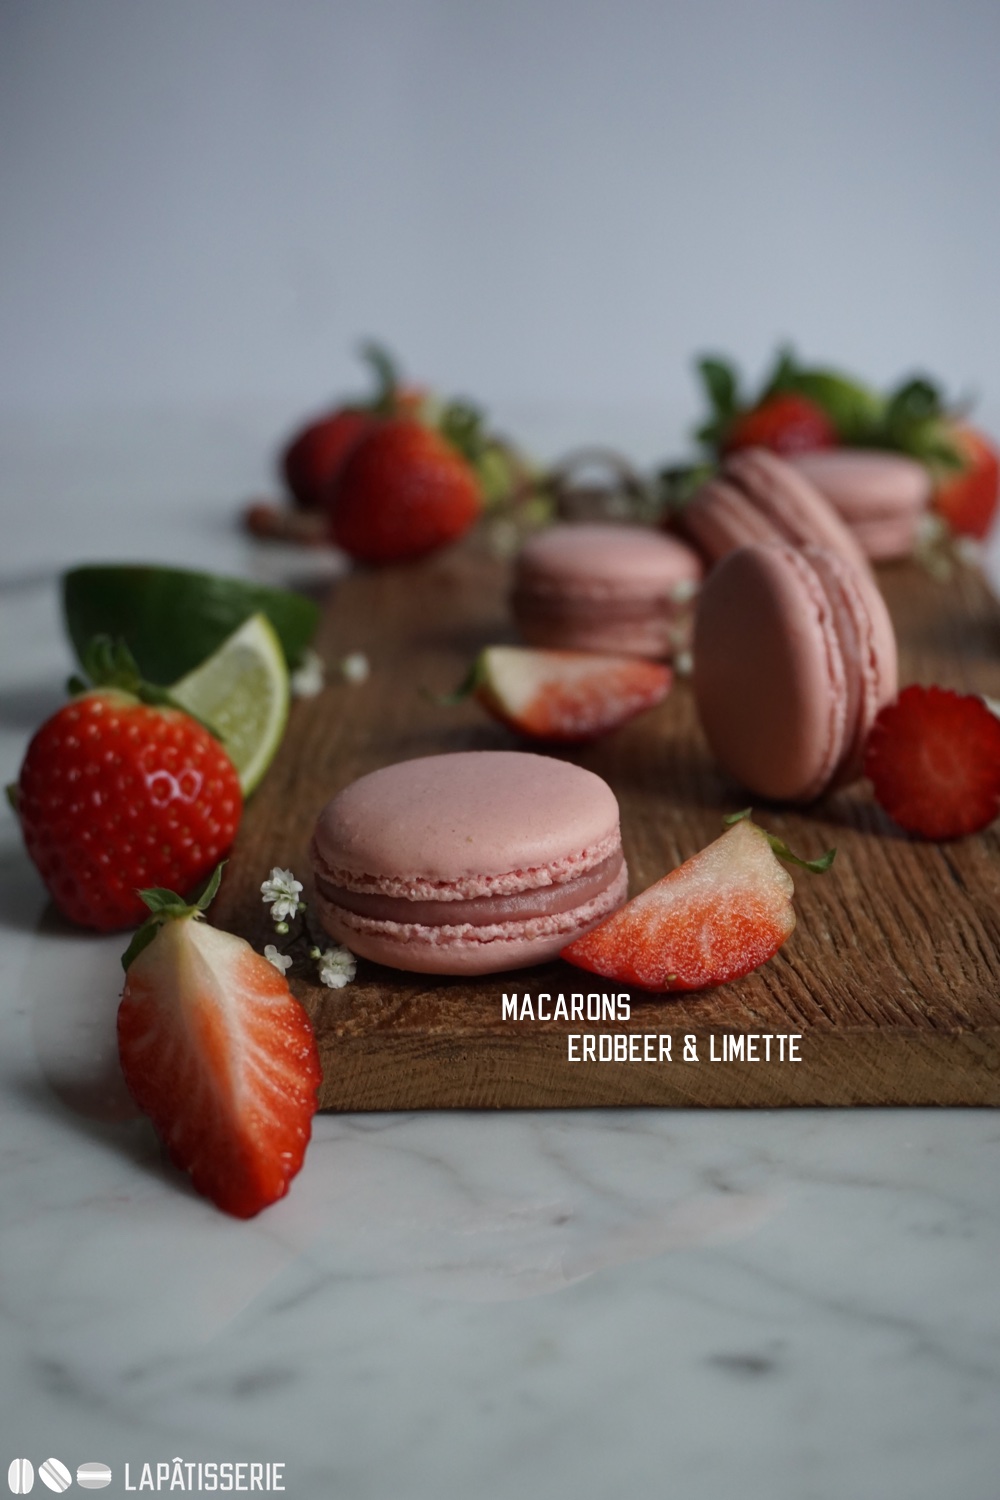 Von diesen fruchtigen Macarons kann man nicht genug bekommen: Erdbeere und Limette kombiniert.